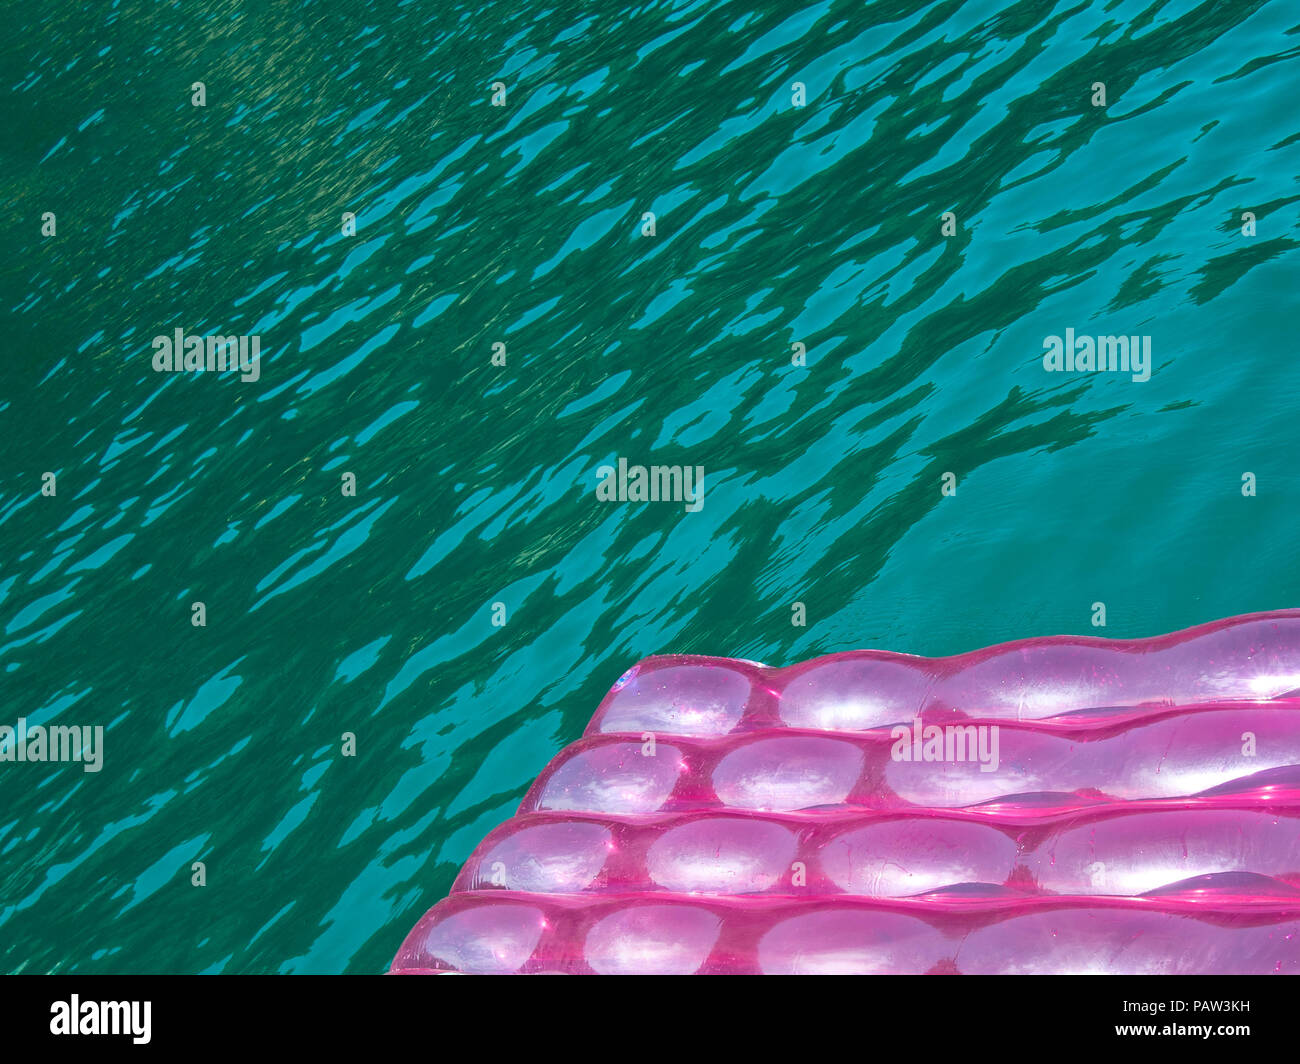 Detail einer rosa Aufblasbare Pad (Matratze) mit Wassertropfen auf der Oberfläche schwimmt im Meer Wasser blau grün transparent Stockfoto